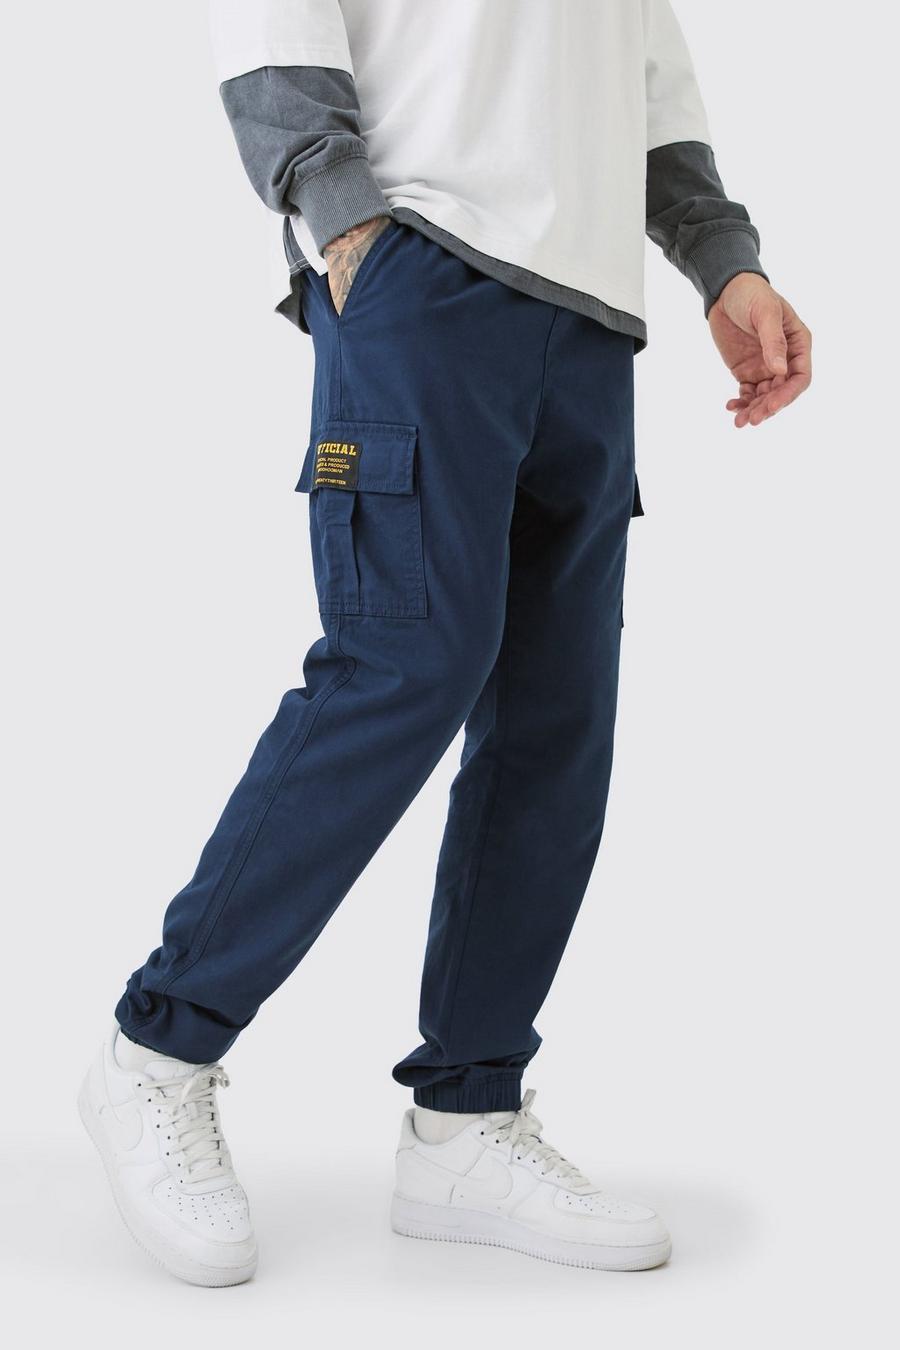 Pantaloni Cargo Tall Slim Fit in twill con vita elasticizzata e etichetta Cargo, Navy